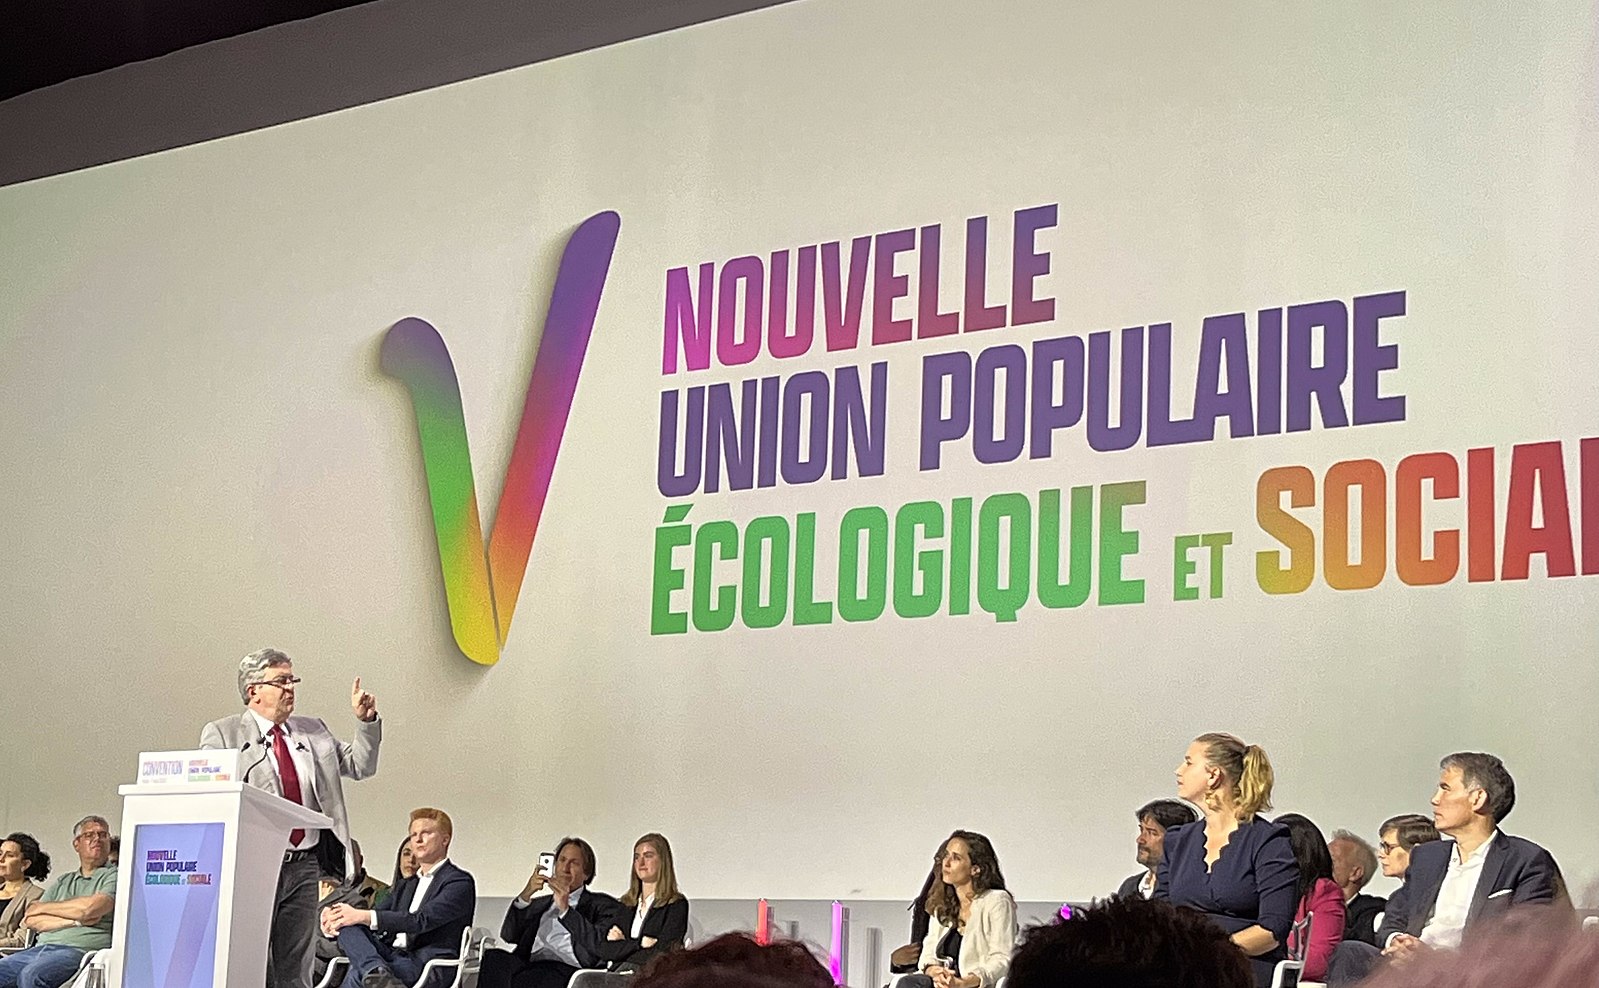 Discours_de_Jean-Luc_Melenchon_lors_de_la_Convention_de_la_Nouvelle_Union_Populaire_Ecologique_et_Sociale